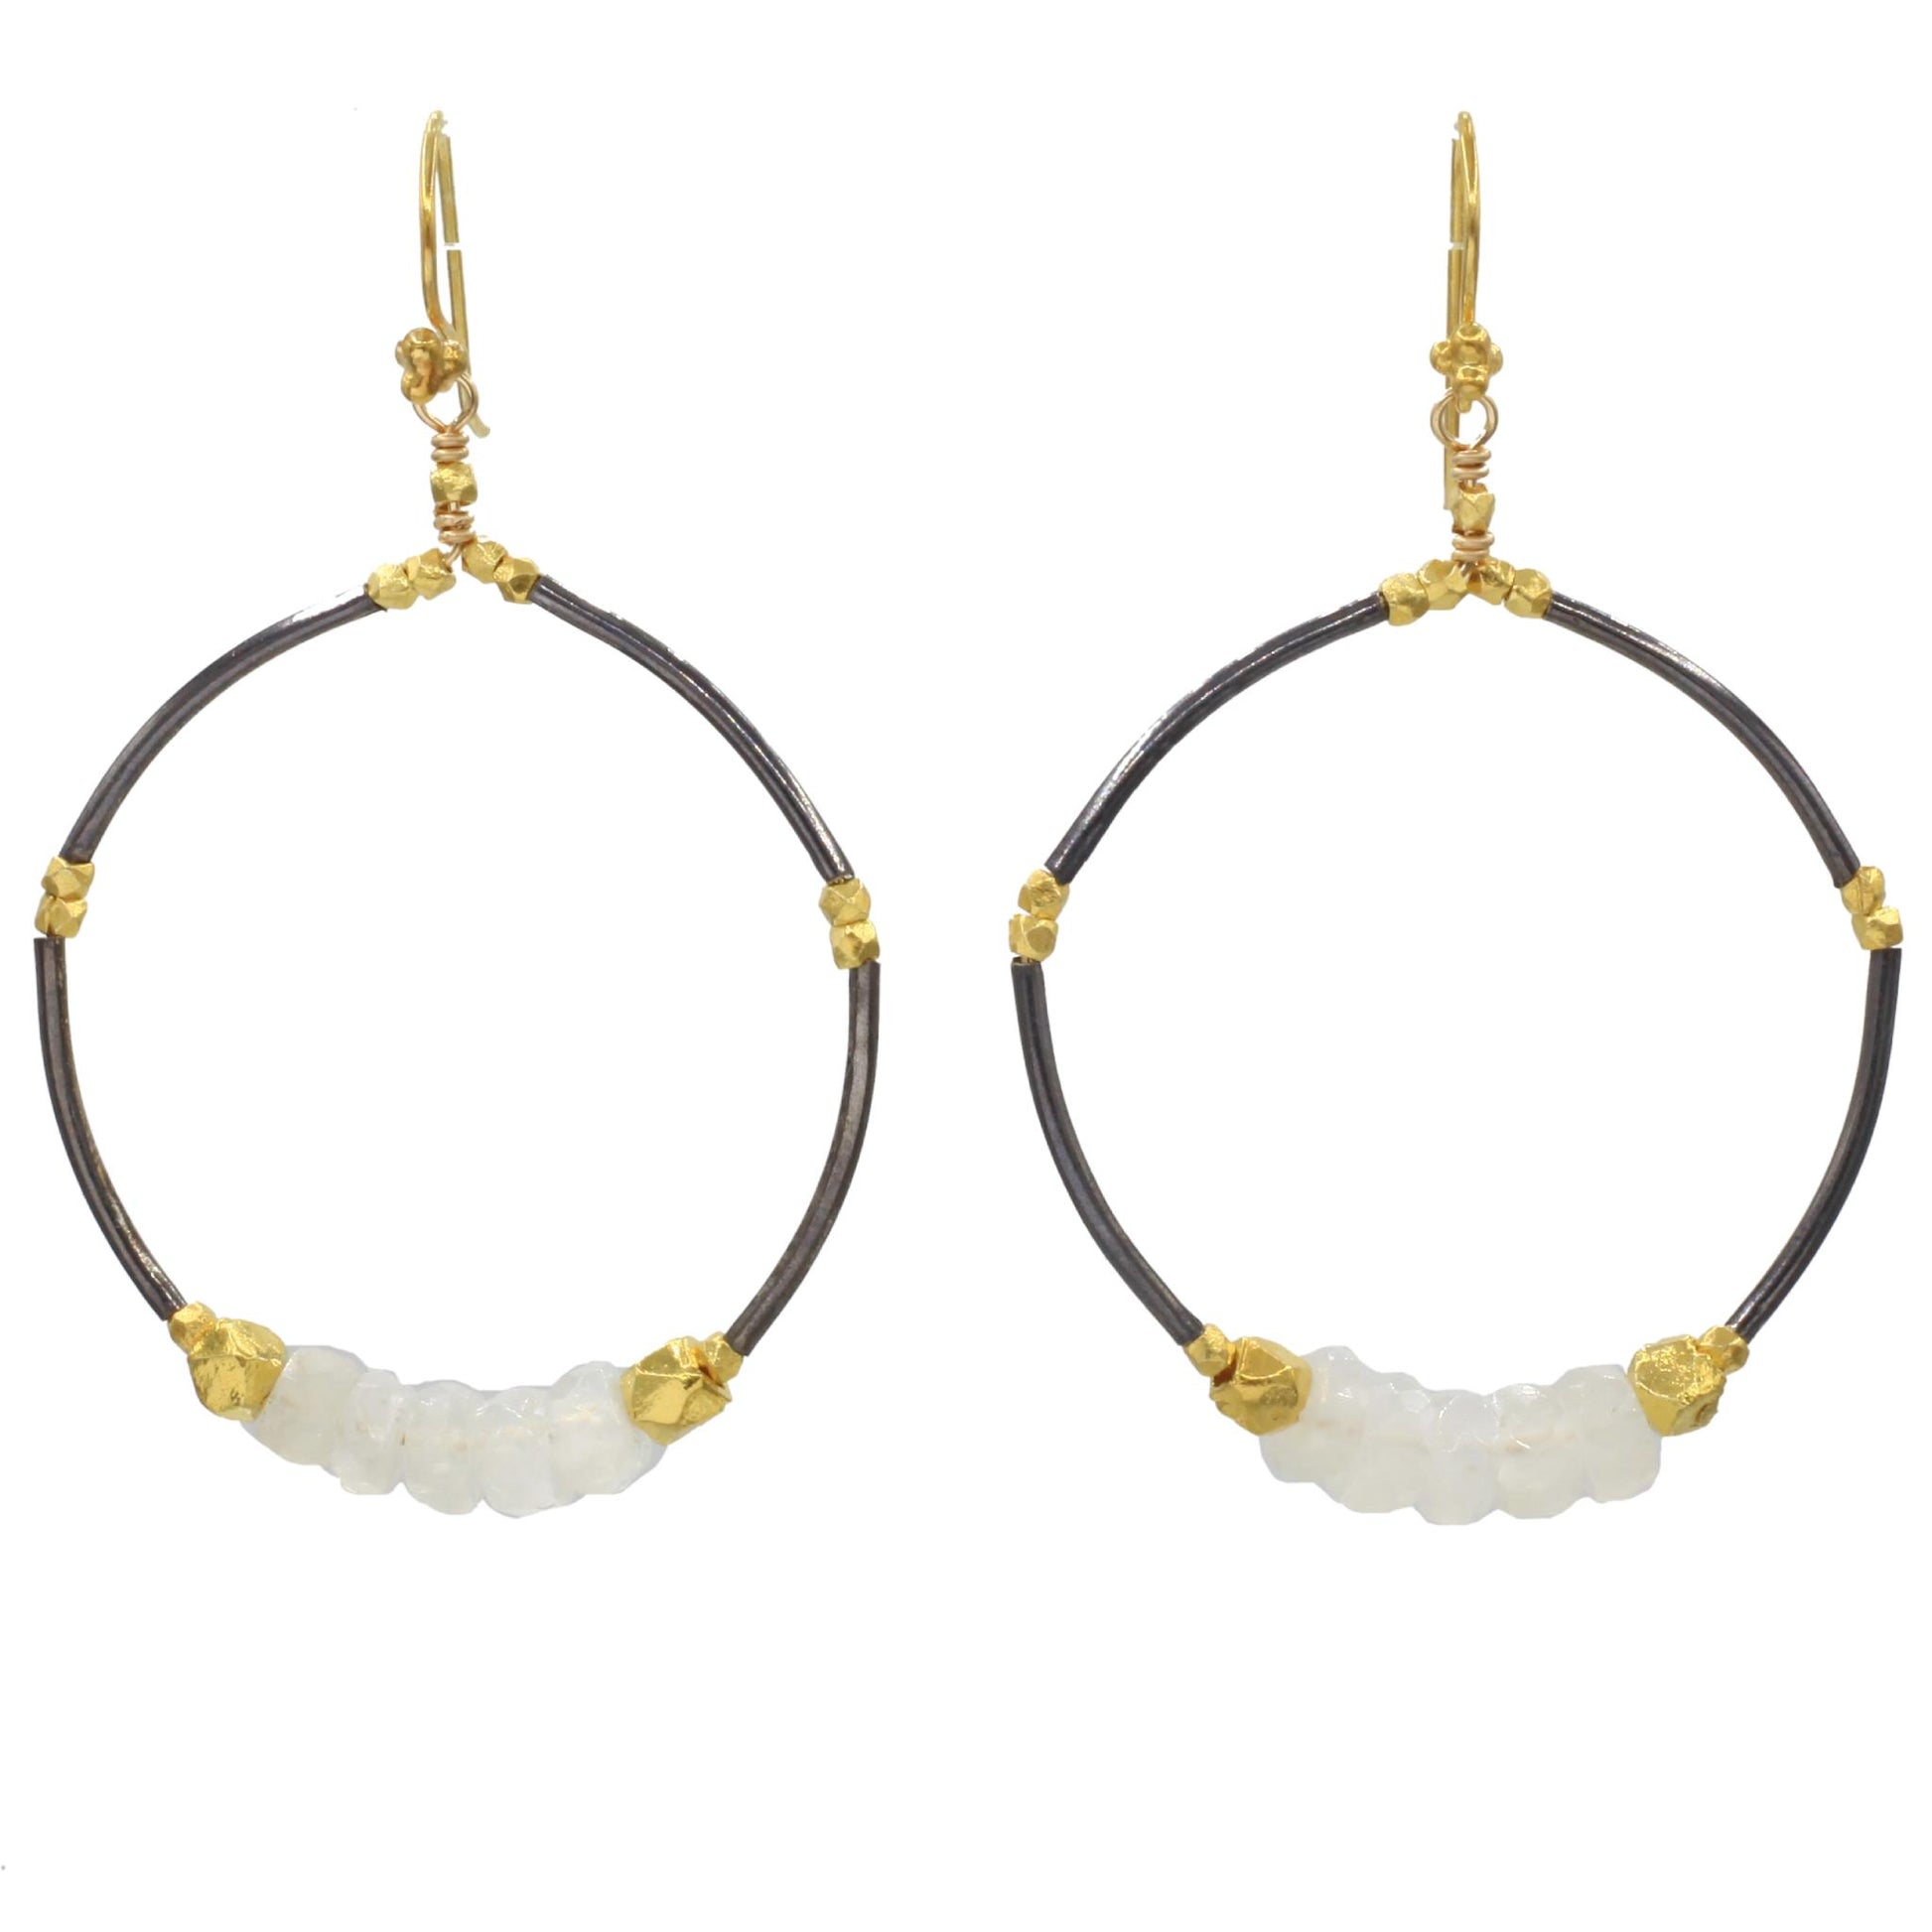 Robindira Unsworth Jewelry | Moonstone + Oxidized Sterling Silver Hoop Earrings | Firecracker